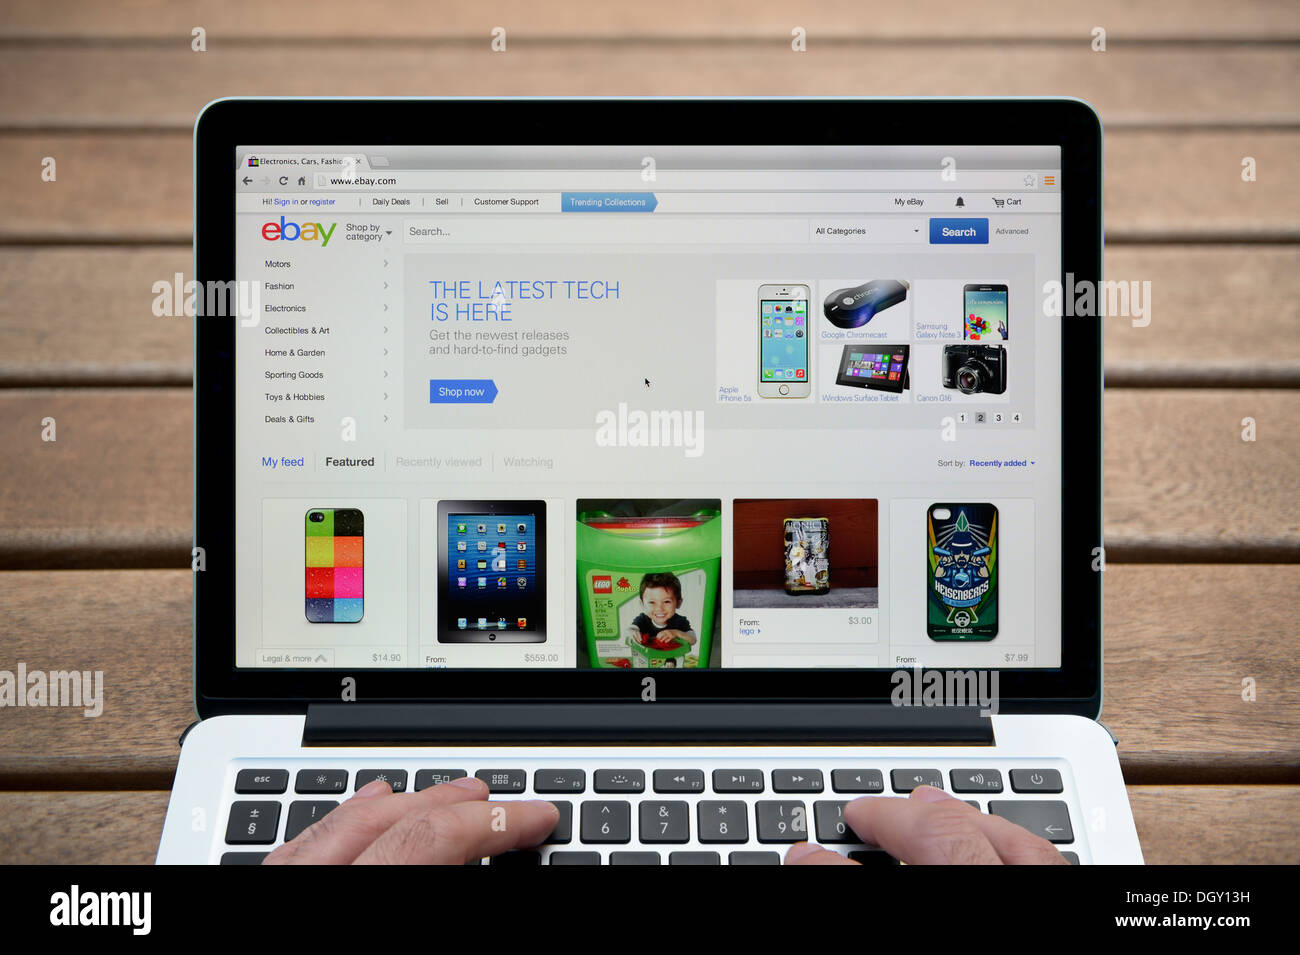 Le site web d'ebay sur un MacBook contre un banc en bois fond de plein air y compris les doigts d'un homme (usage éditorial uniquement). Banque D'Images